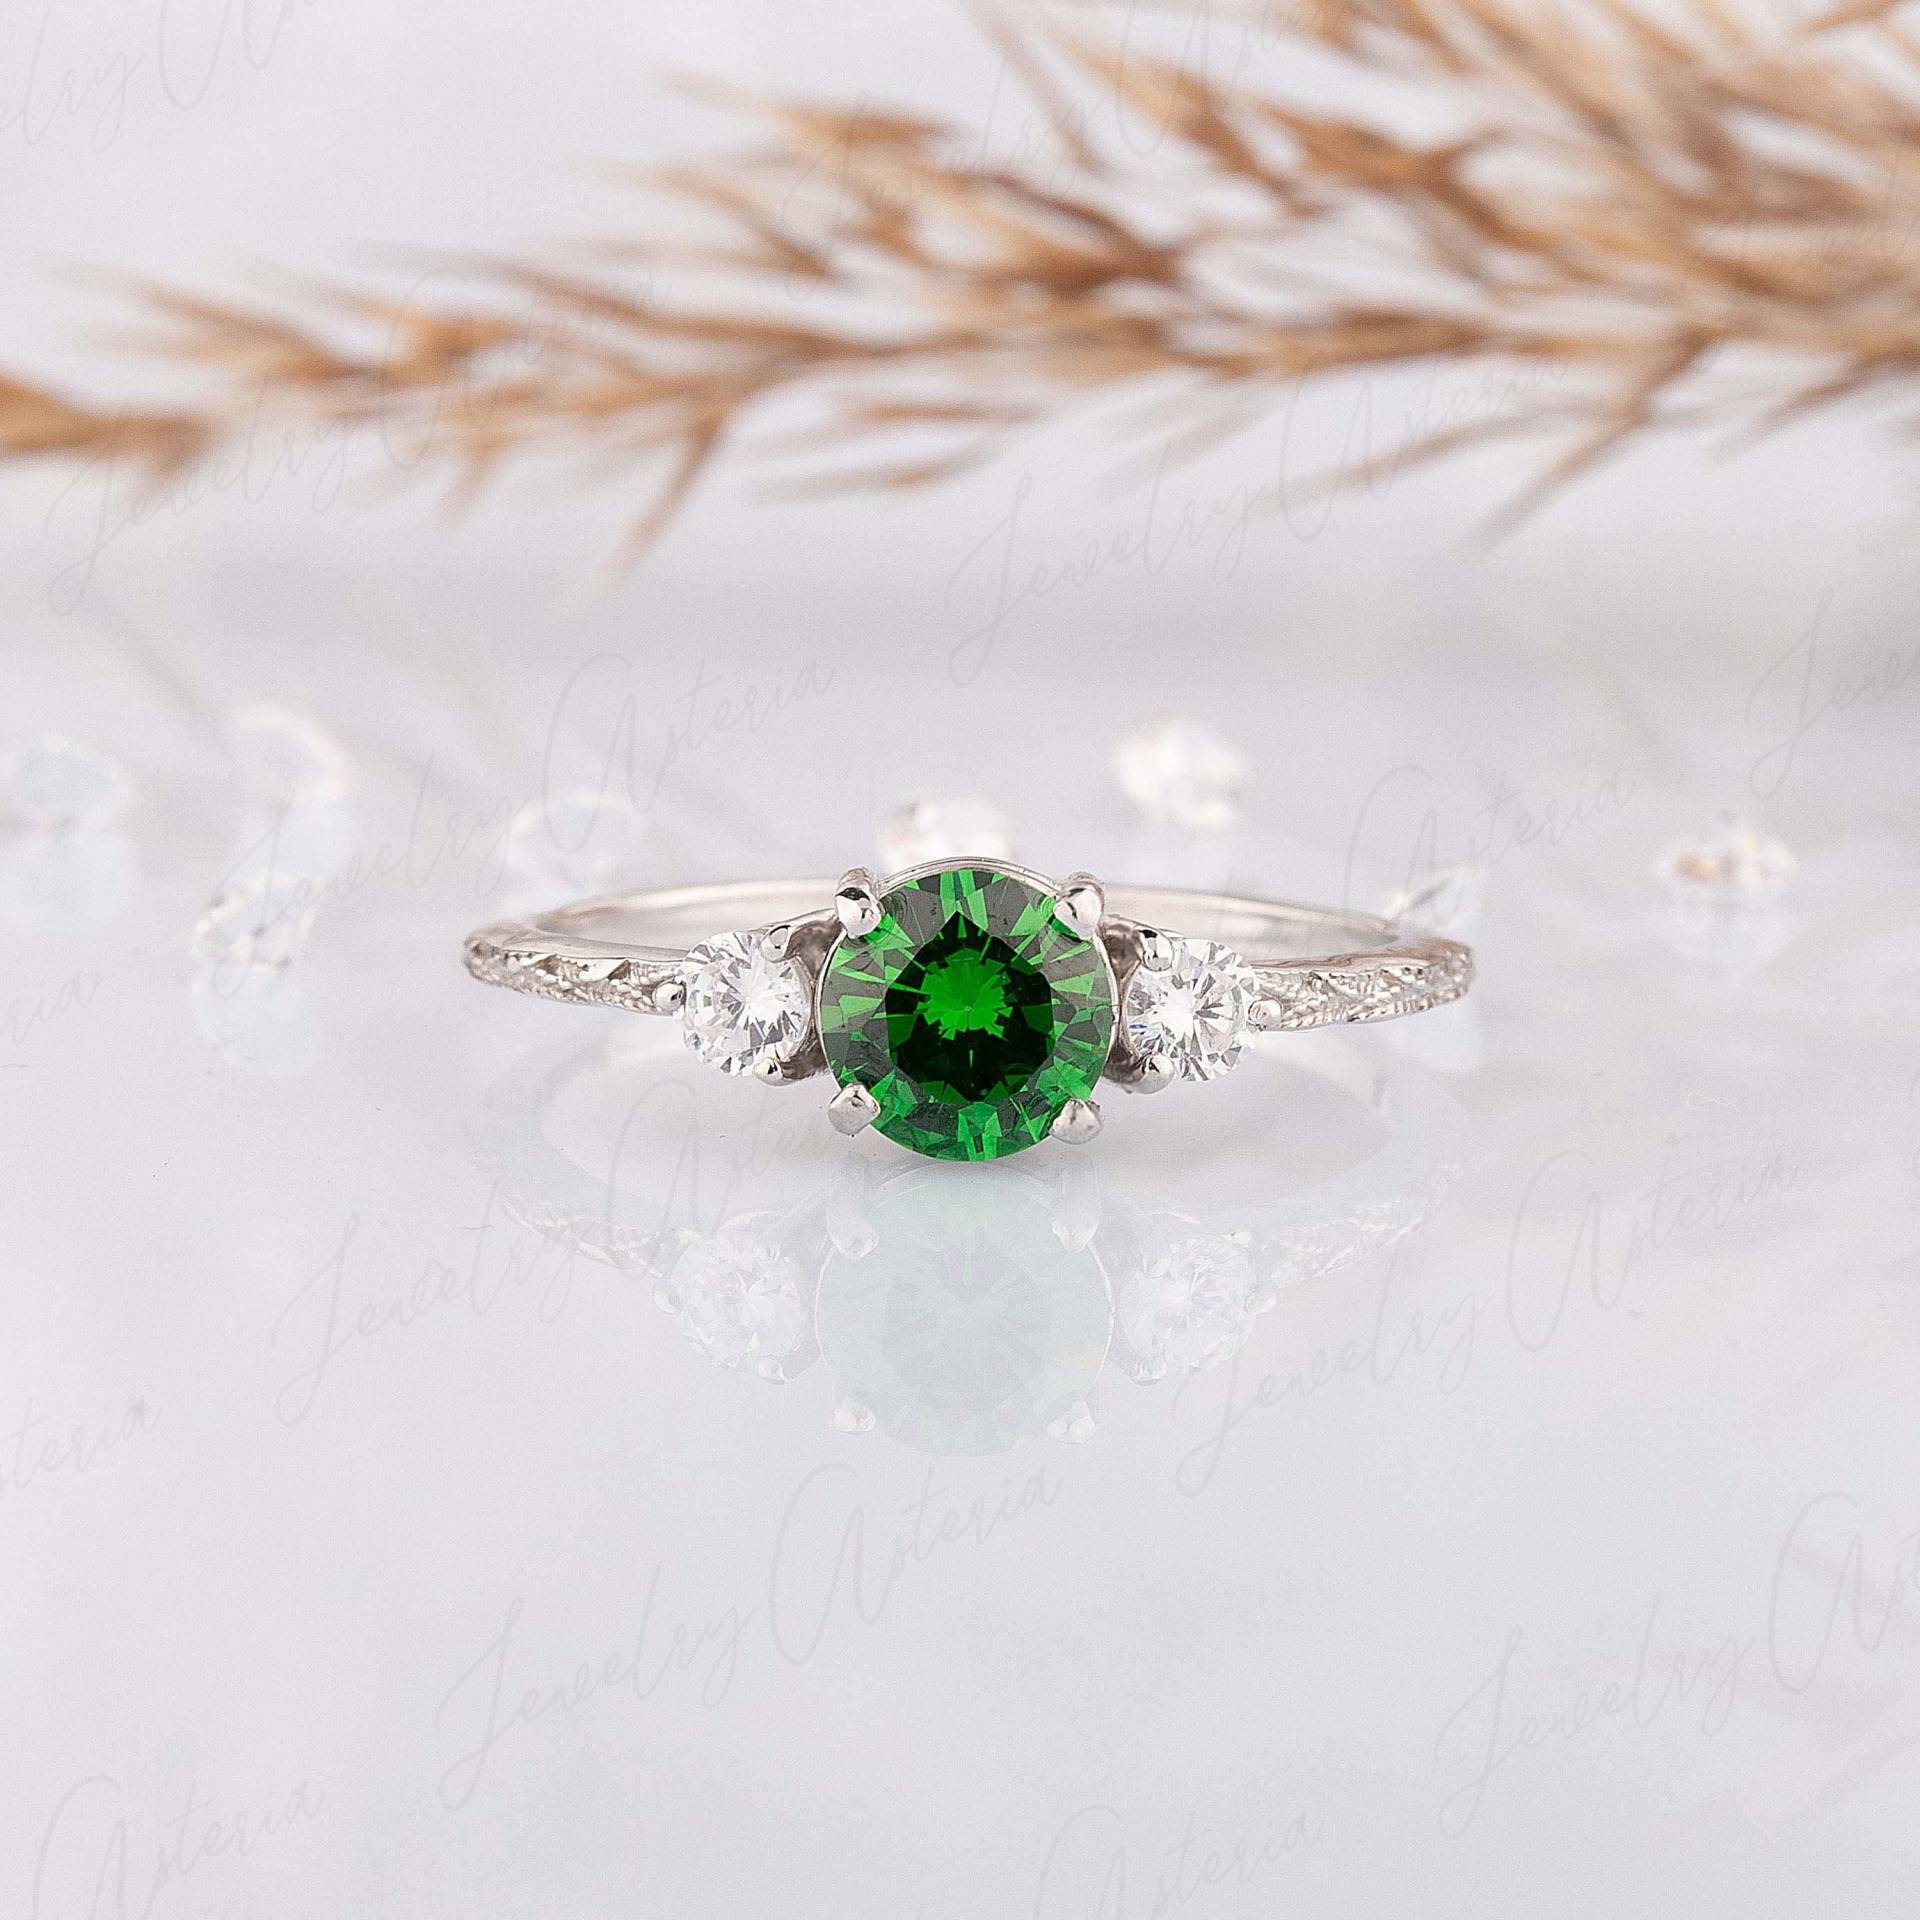 Vintage-Stil Smaragd Verlobungsring, 3 Steine, Silber Ehering, Einzigartige Ehering Für Sie, Geschenk Sie von JewelryAsteria